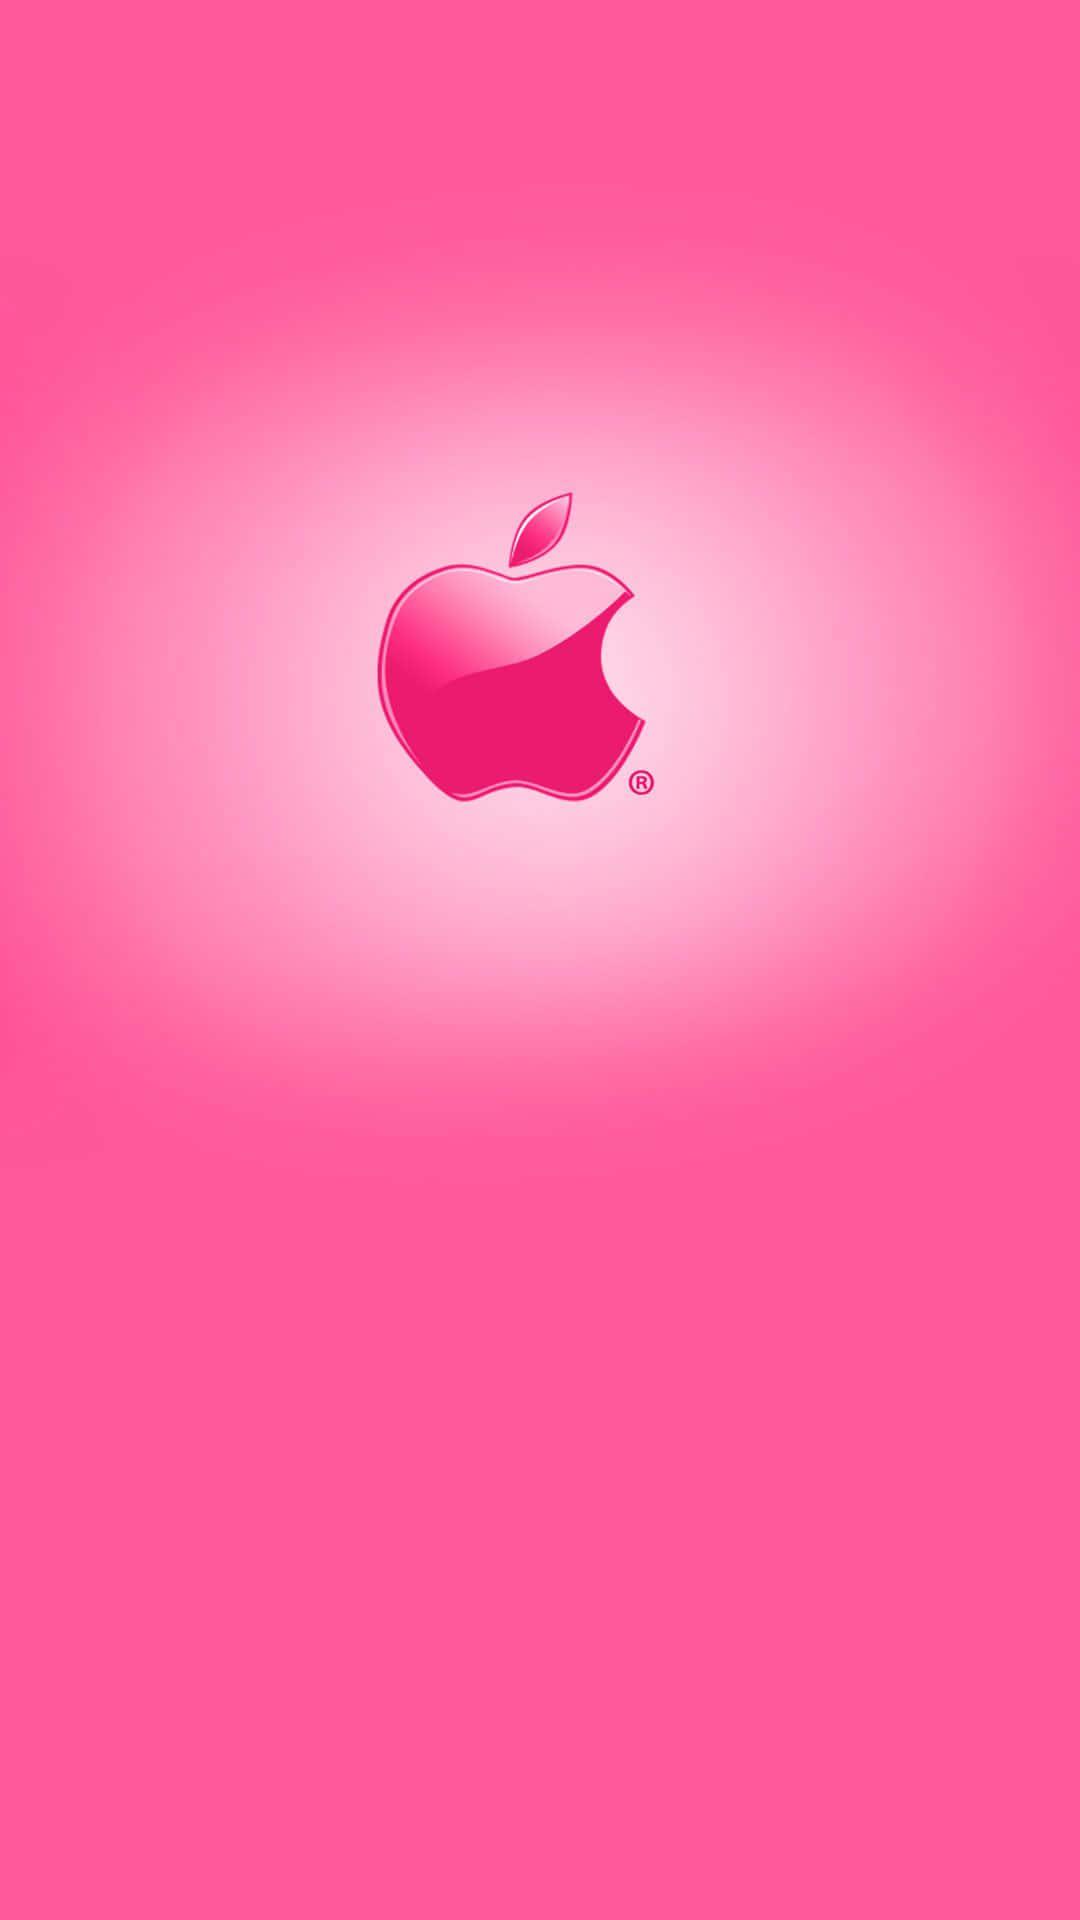 Papelde Parede Do Iphone Hd Da Apple Incrível Do Logotipo Rosa Brilhante. Papel de Parede